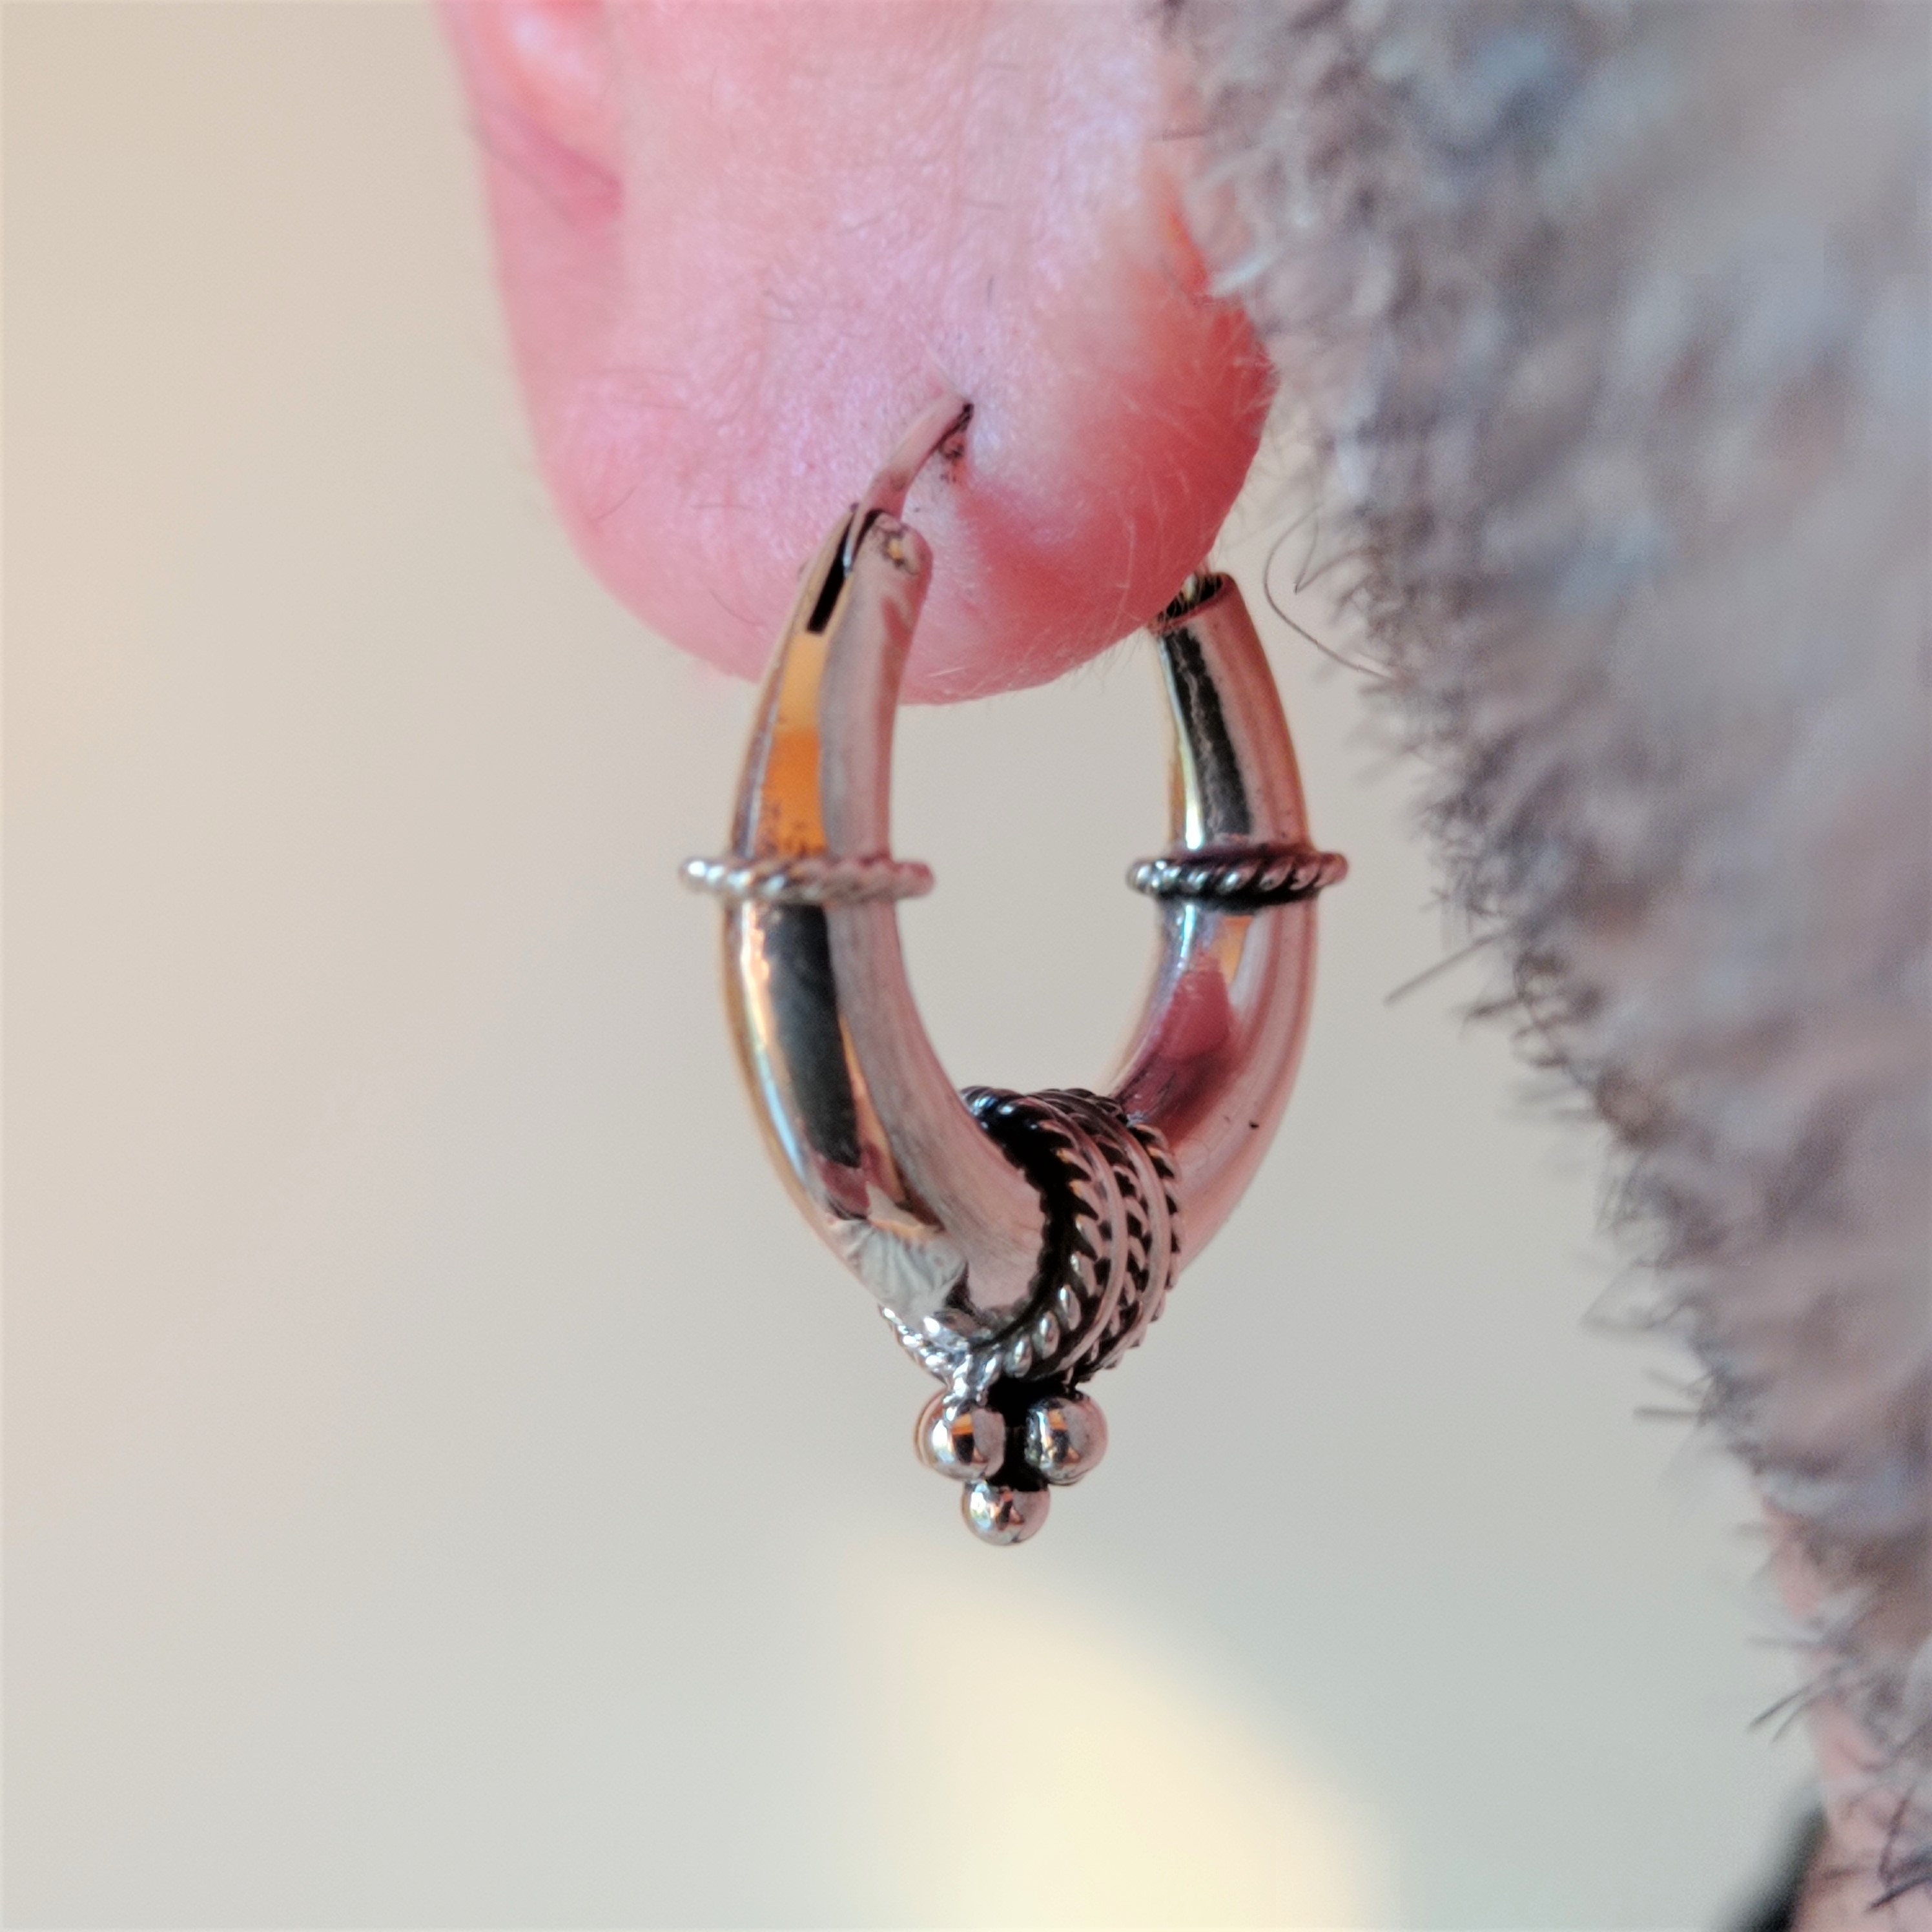 Silver Hoops Earrings in Filigree art by Silver Linings